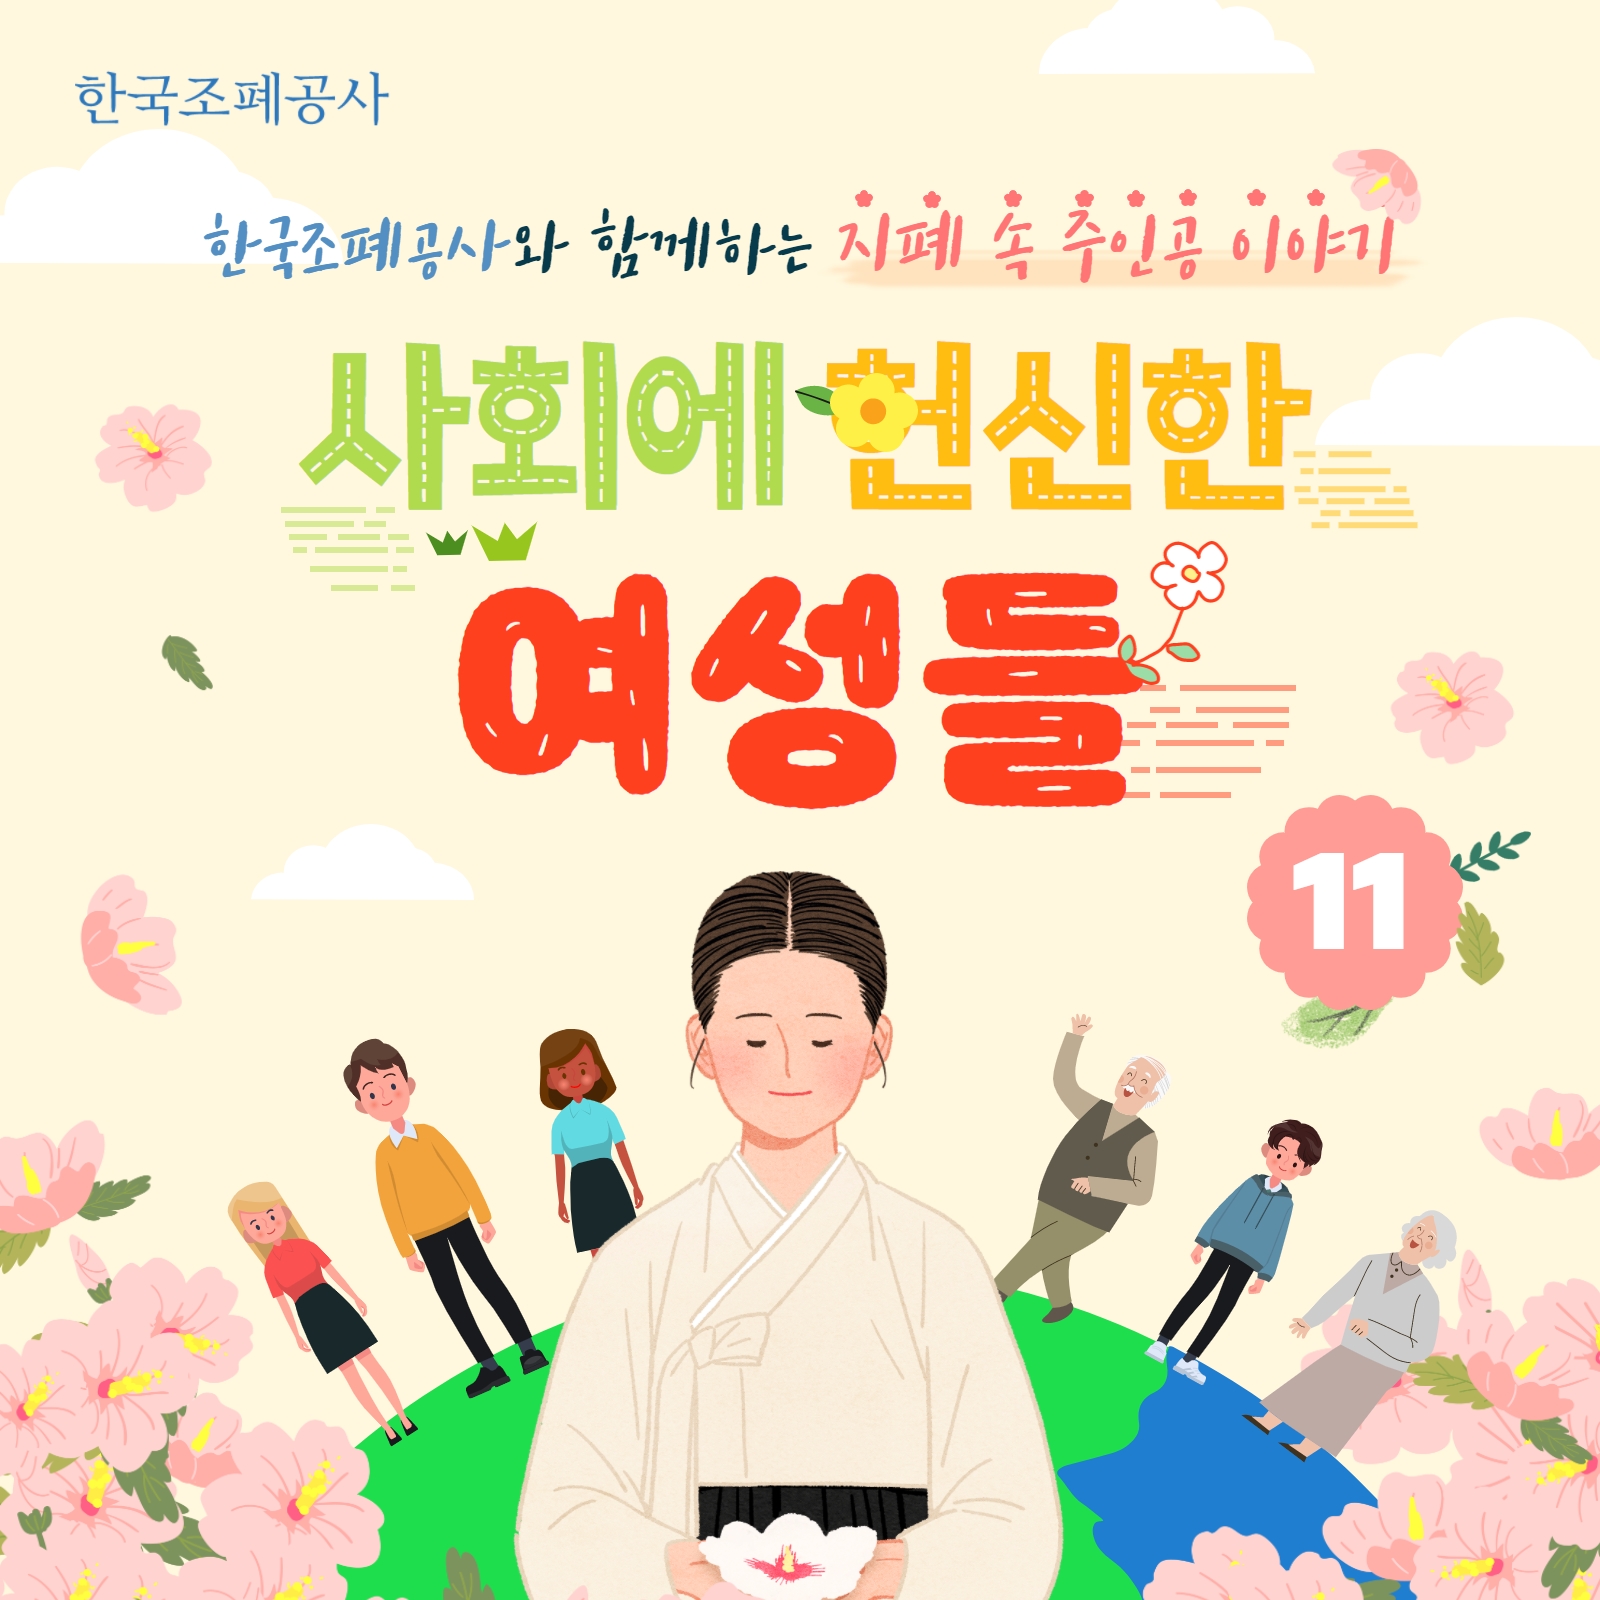 한국조폐공사와 함께하는 지폐 속 주인공 이야기 11편. 사회에 헌신한 여성들